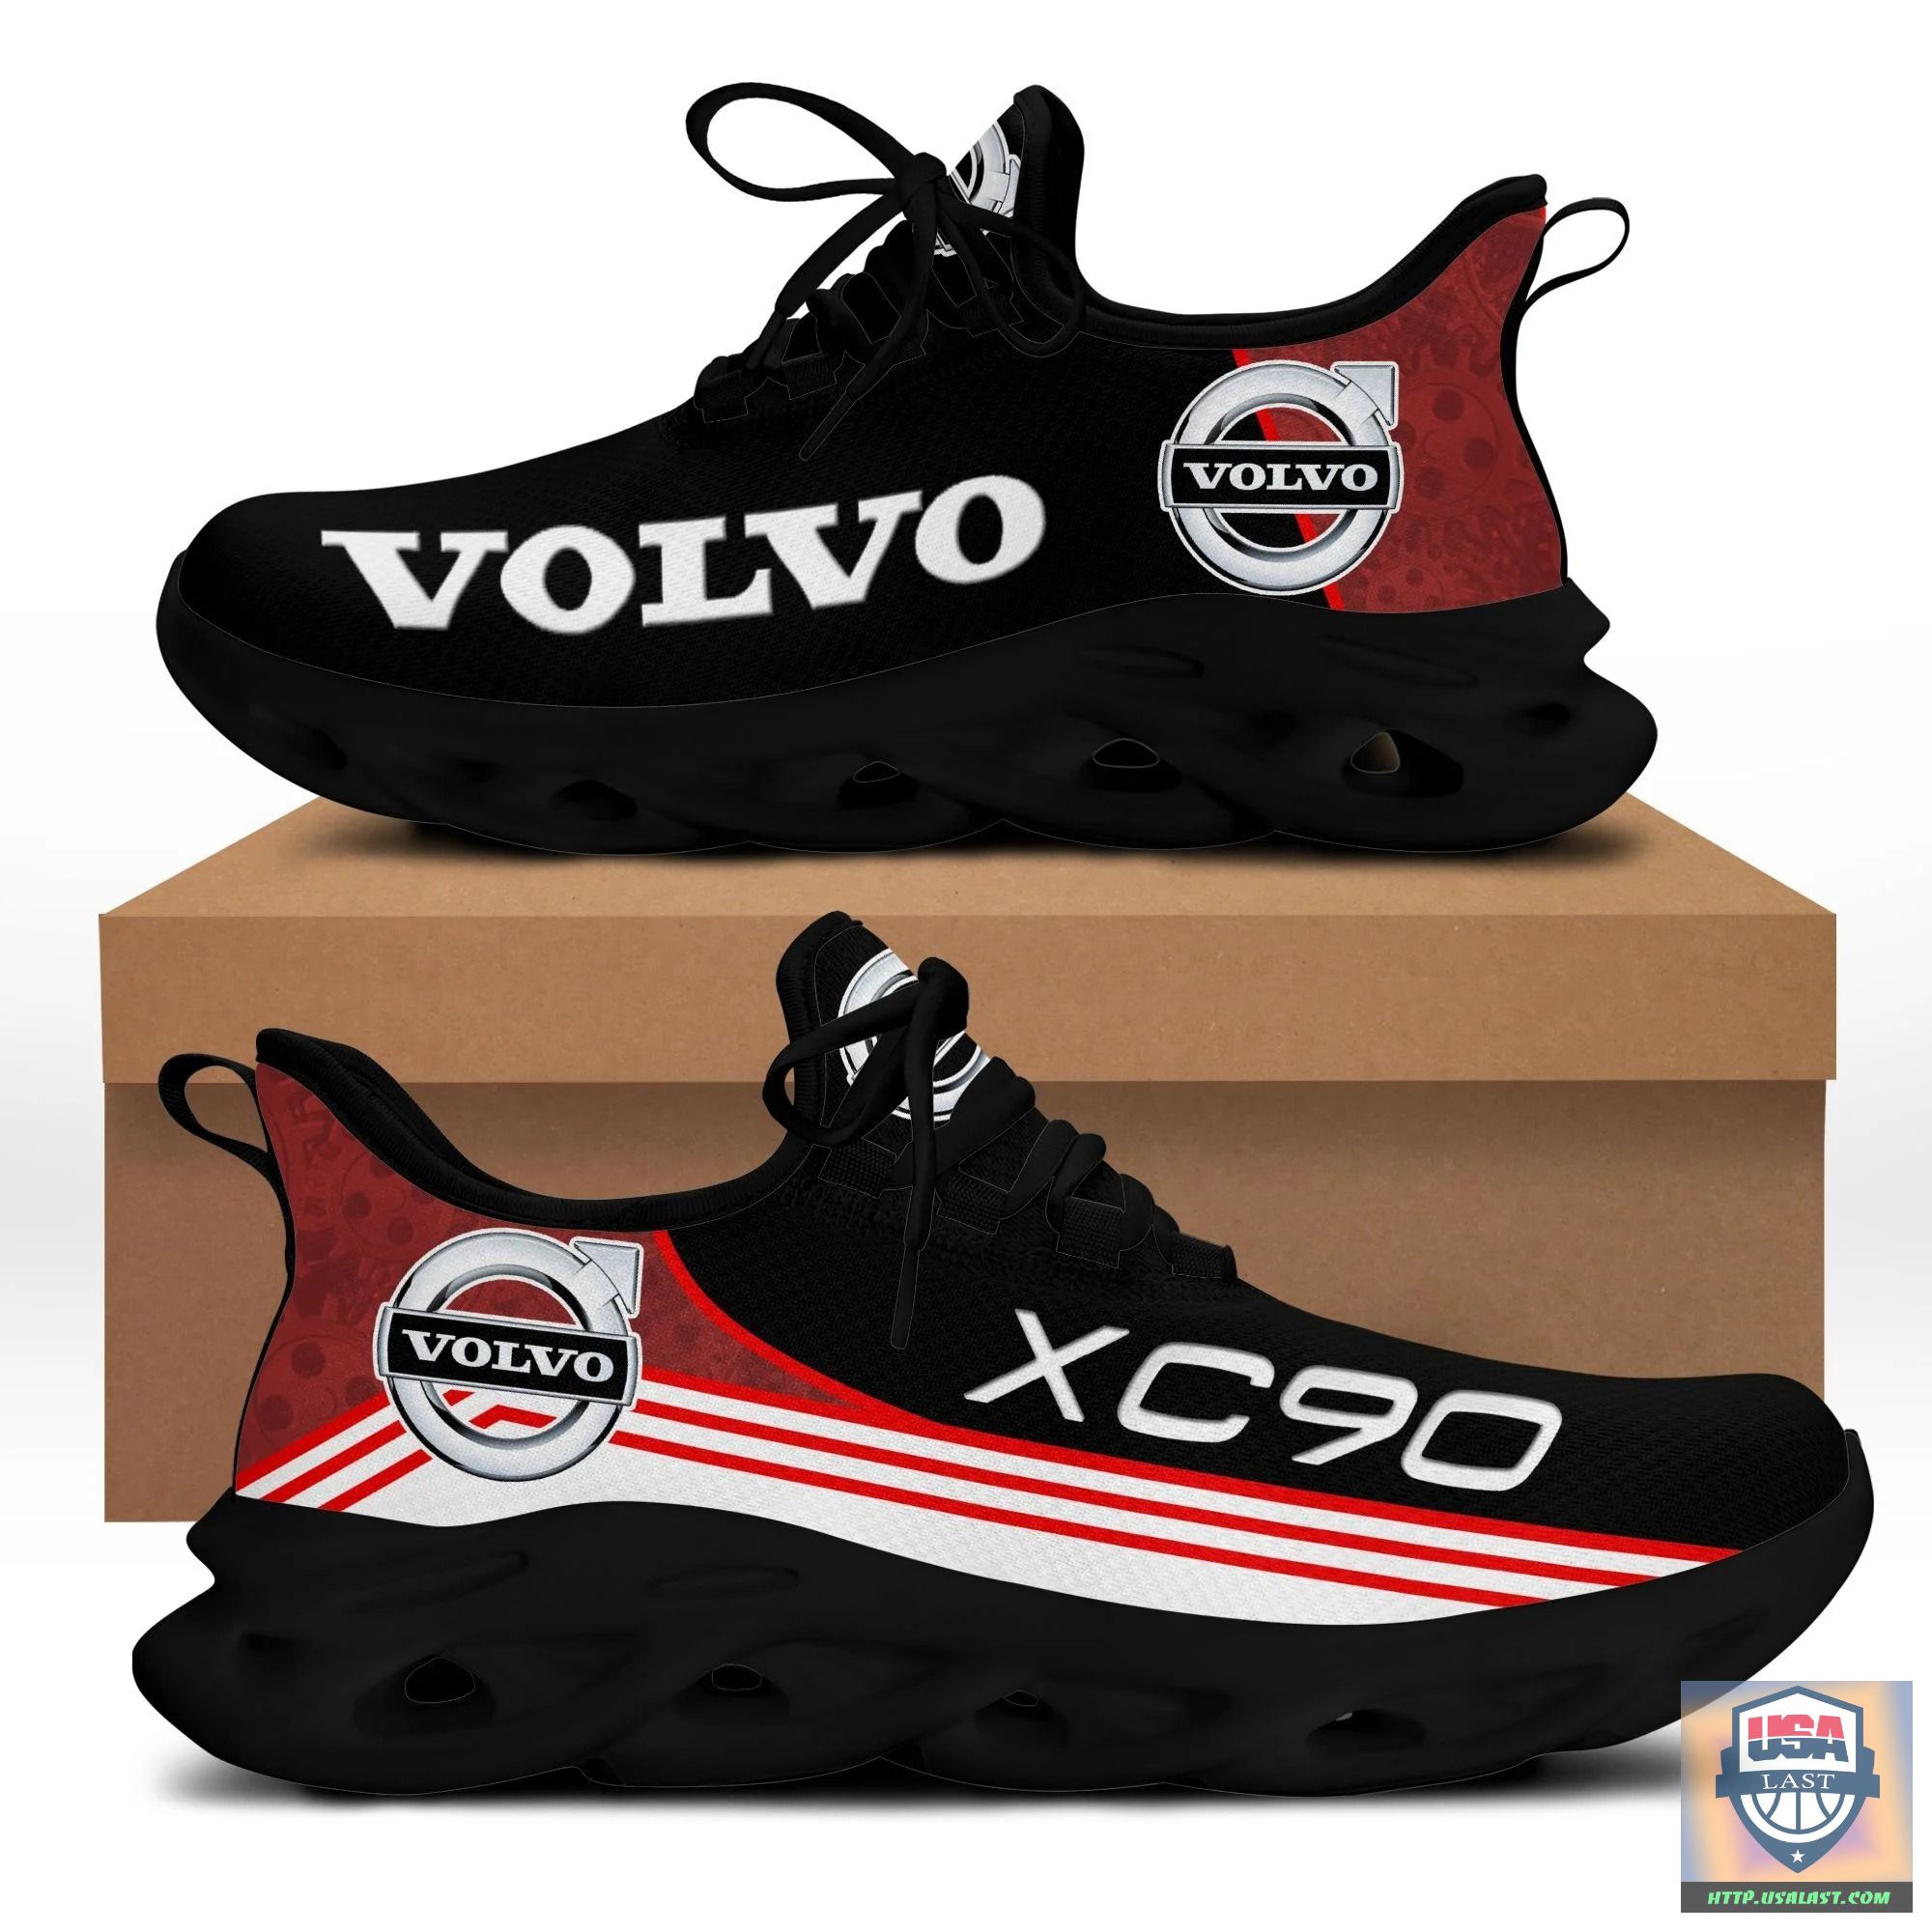 Volvo Brand Red Sneaker – Usalast